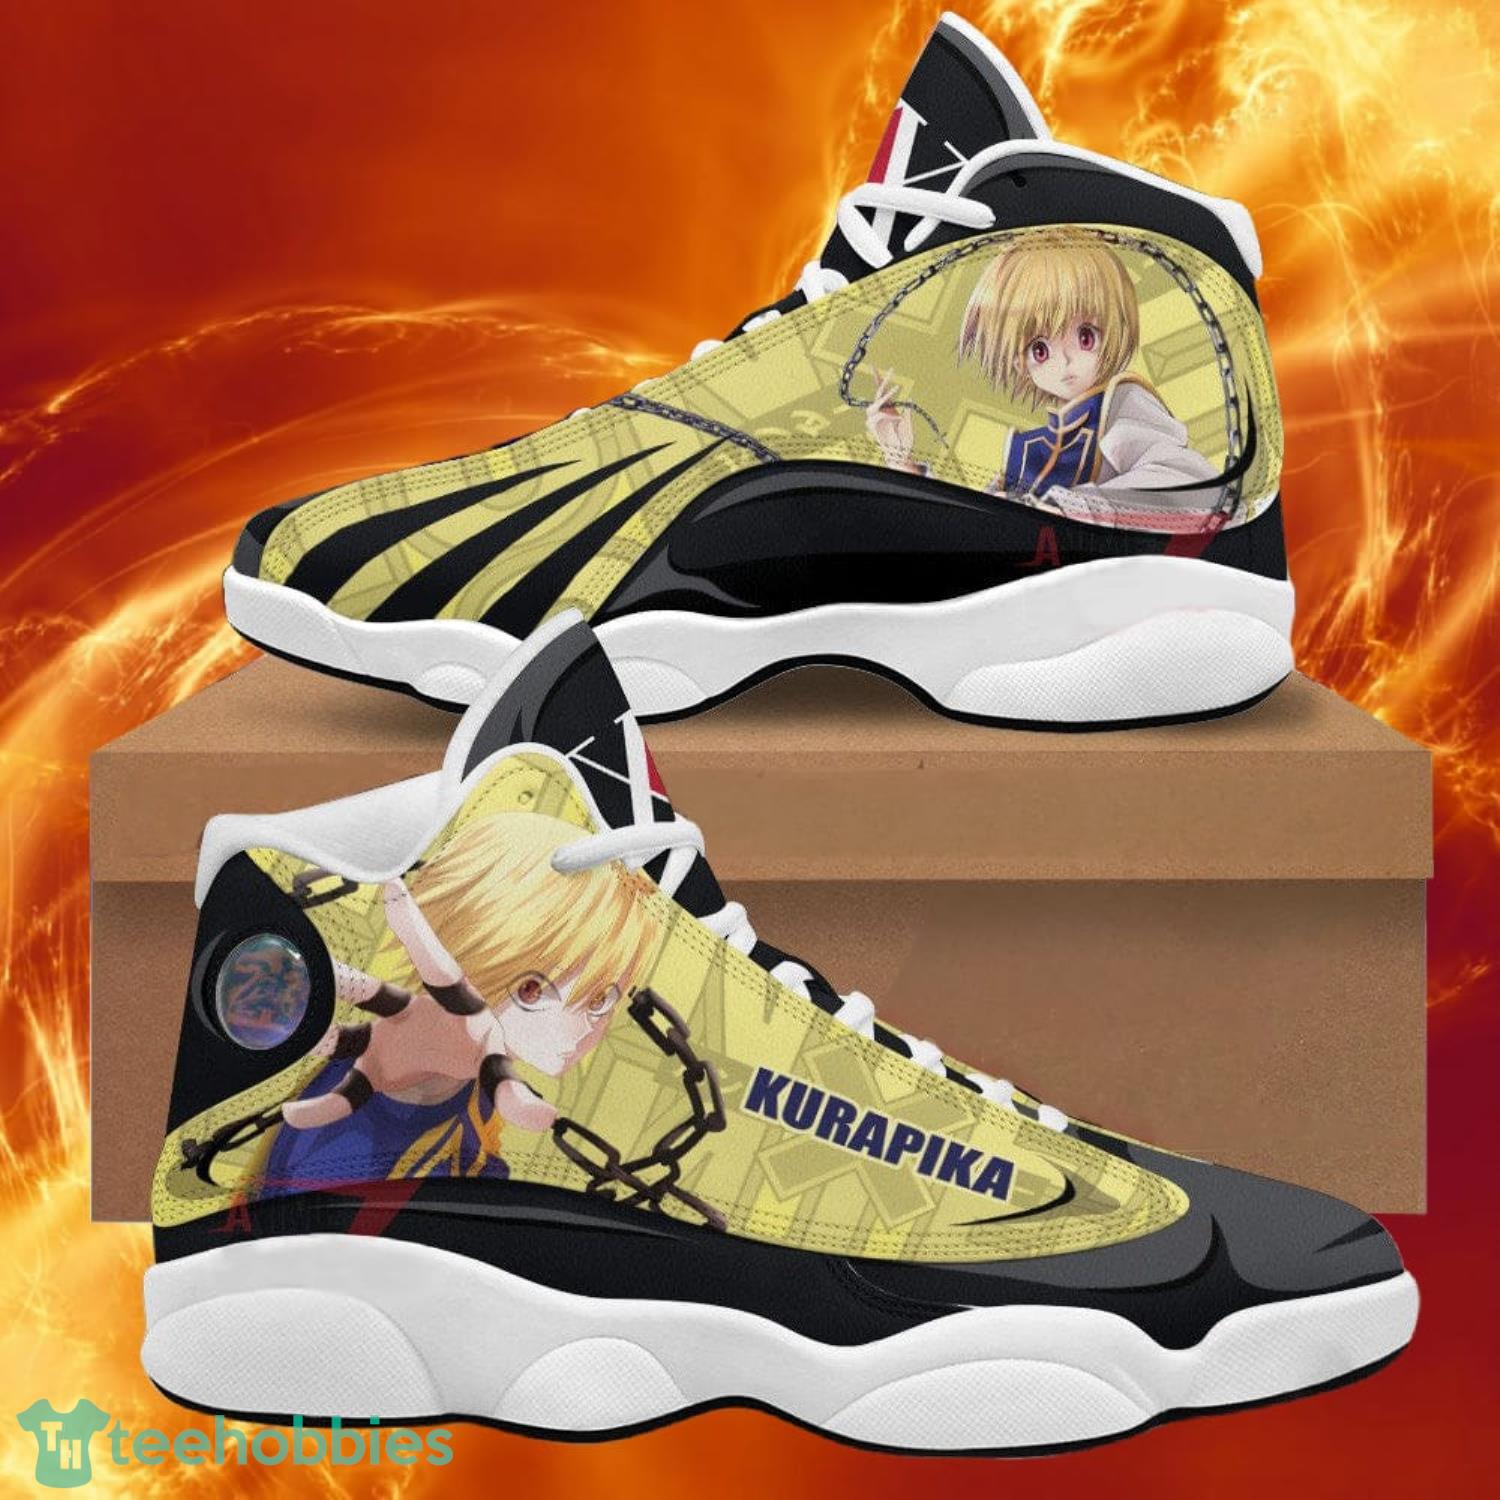 Hunter X Hunter Air Jordan 13 Sneakers Custom Kurapika Kurta Anime Shoes